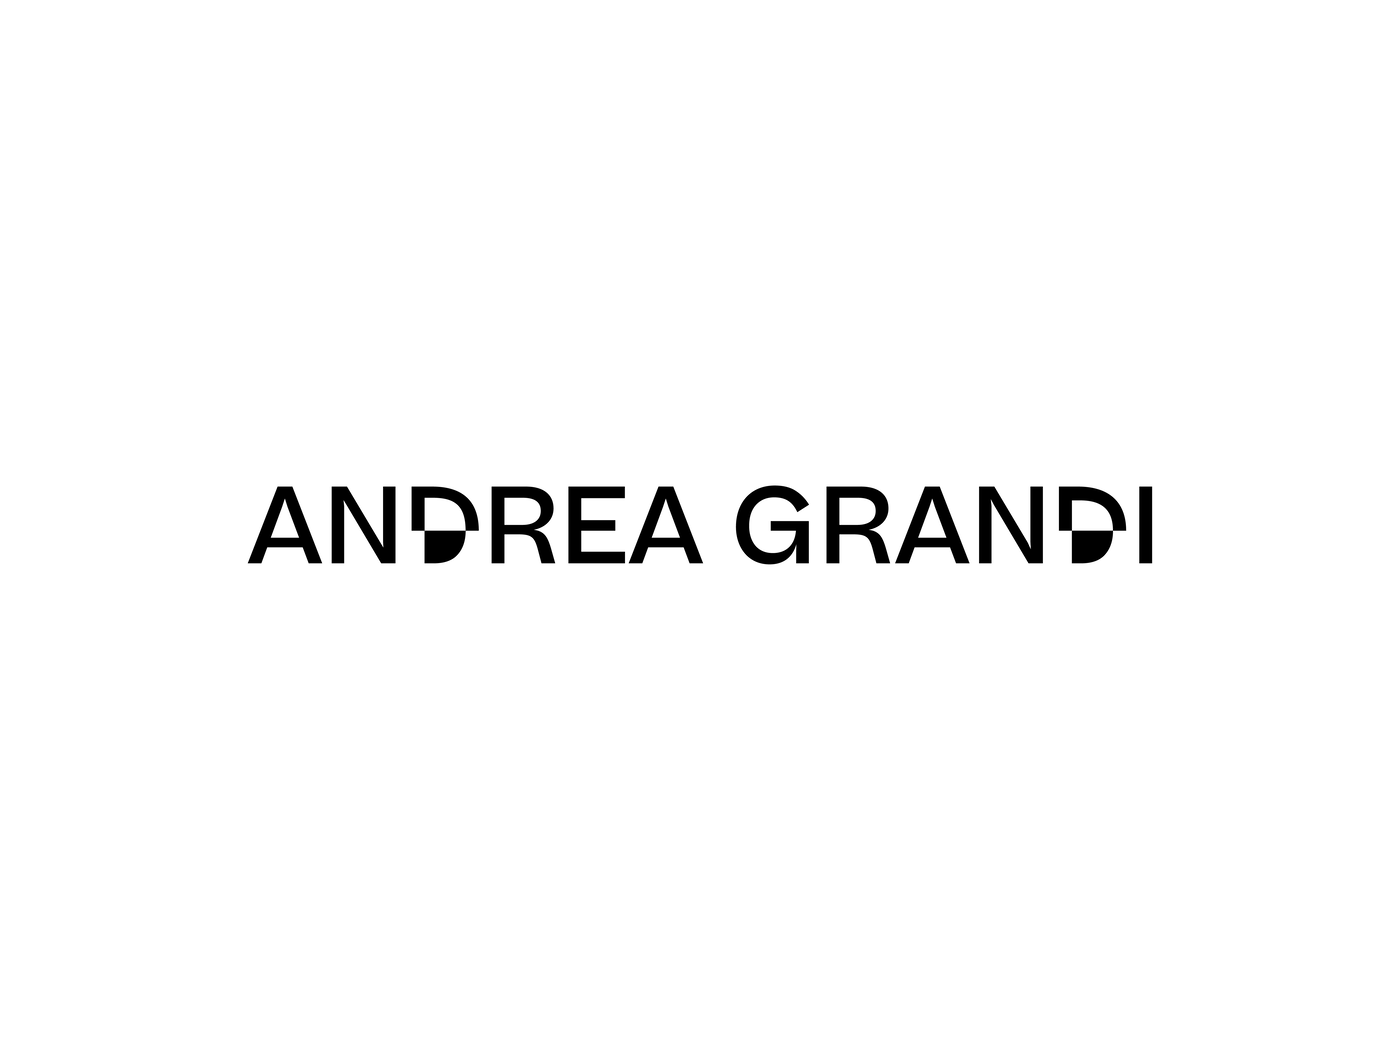 Andrea Grandi - Fonts In Use